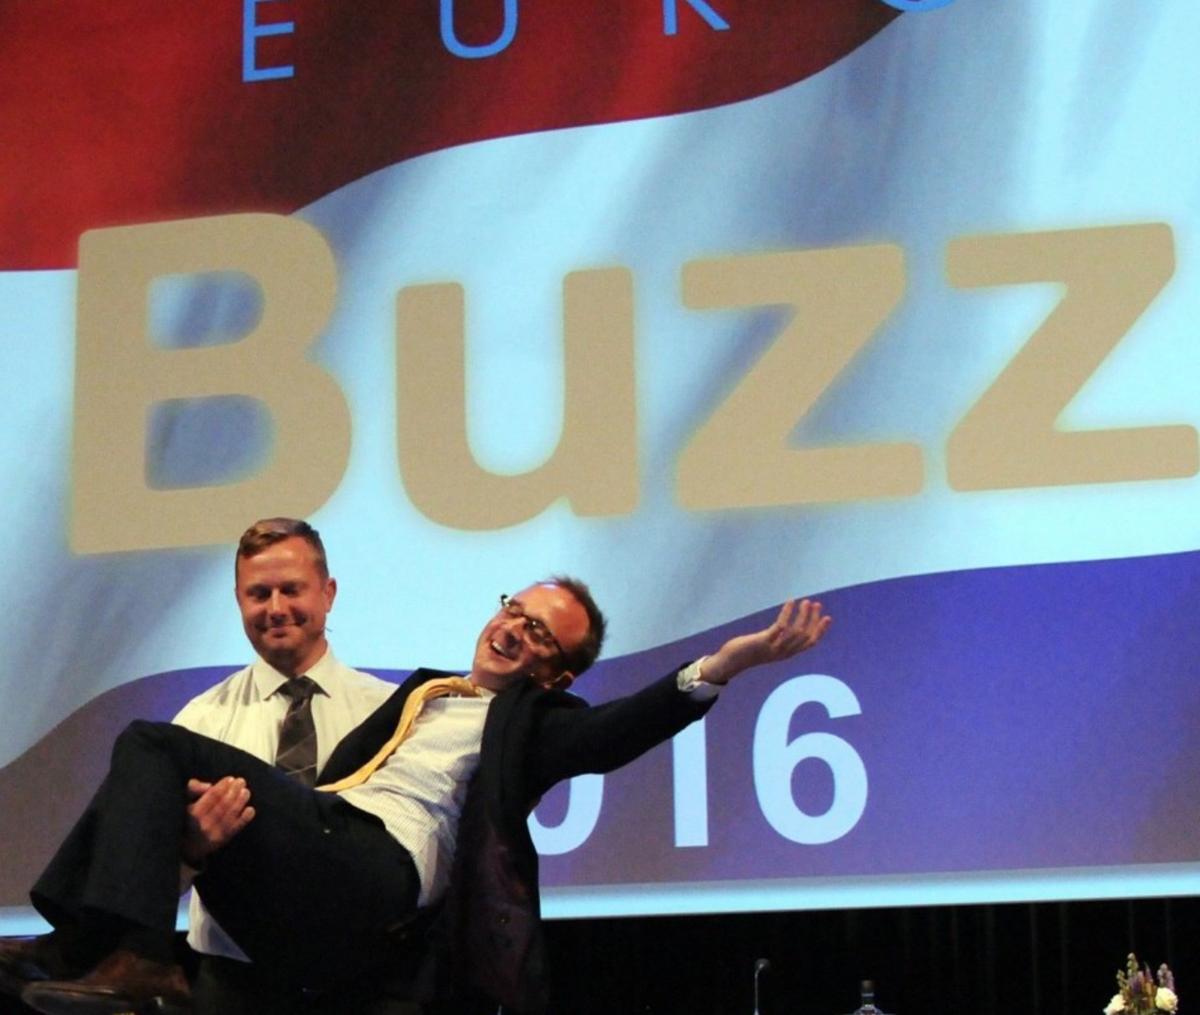 Jeff en Ed gaven een samenvatting van EuroBuzz 2016  